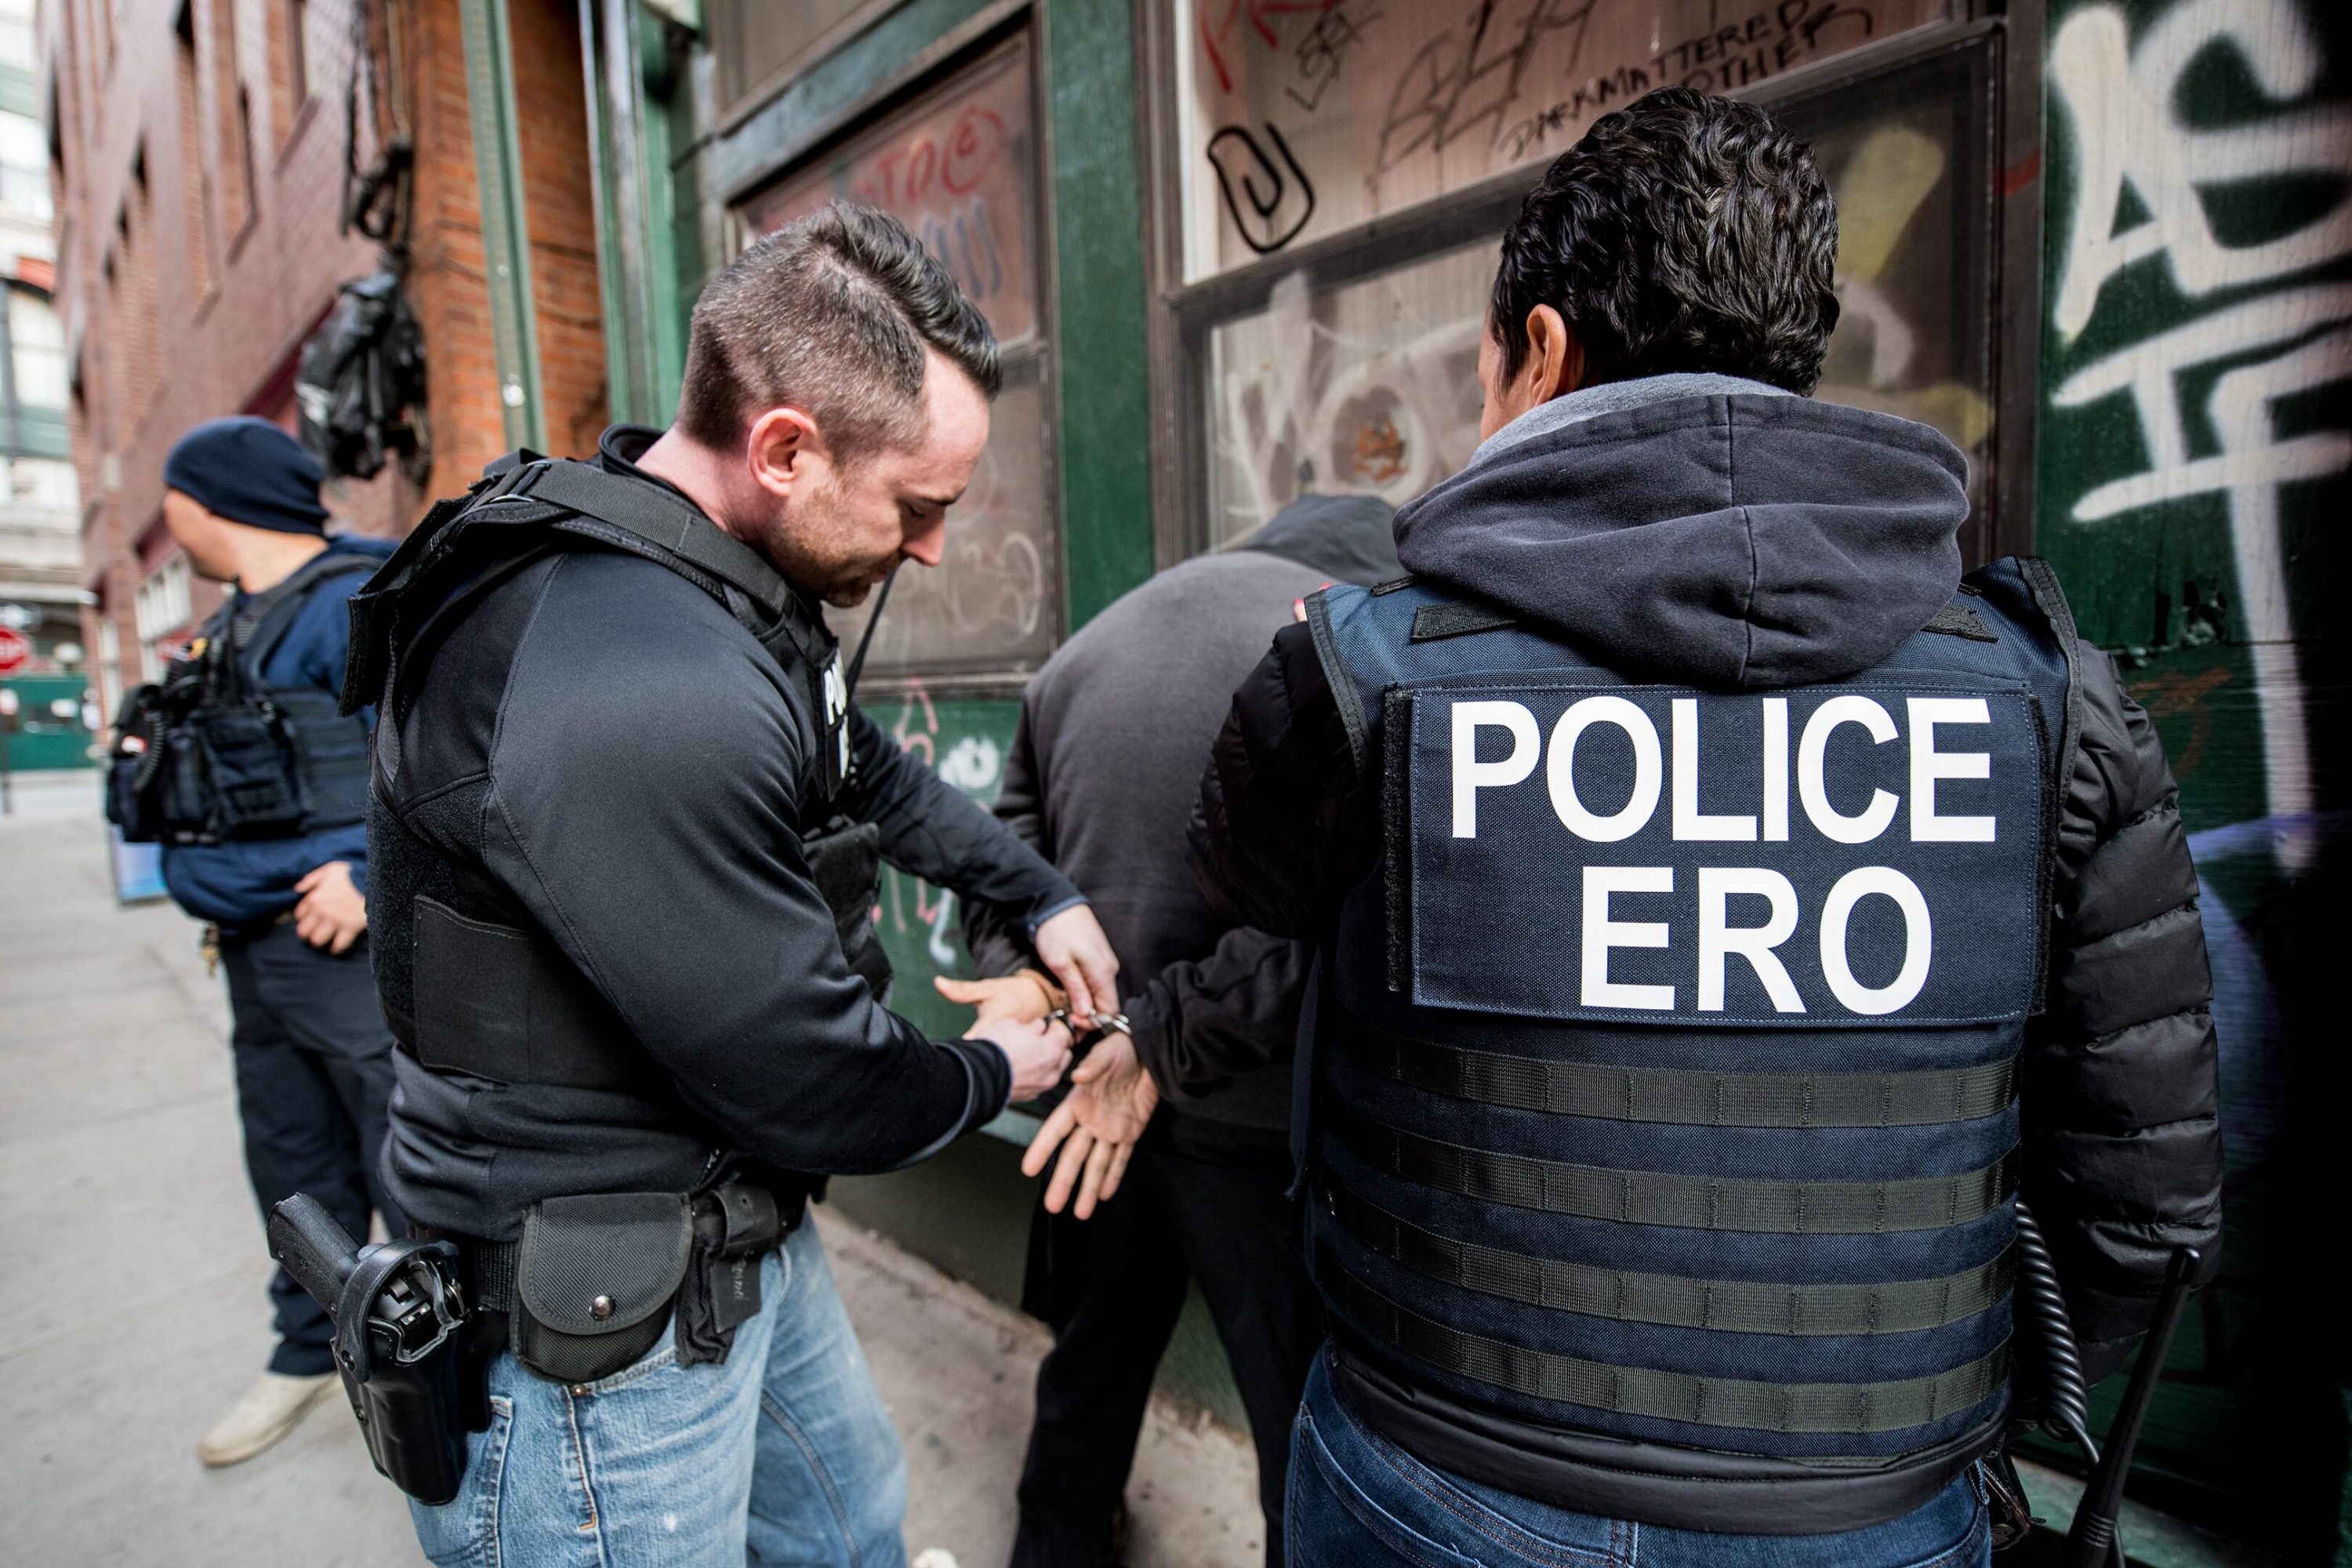 ICE divulga lista com indocumentados presos e soltos pela polícia (Foto ICE)